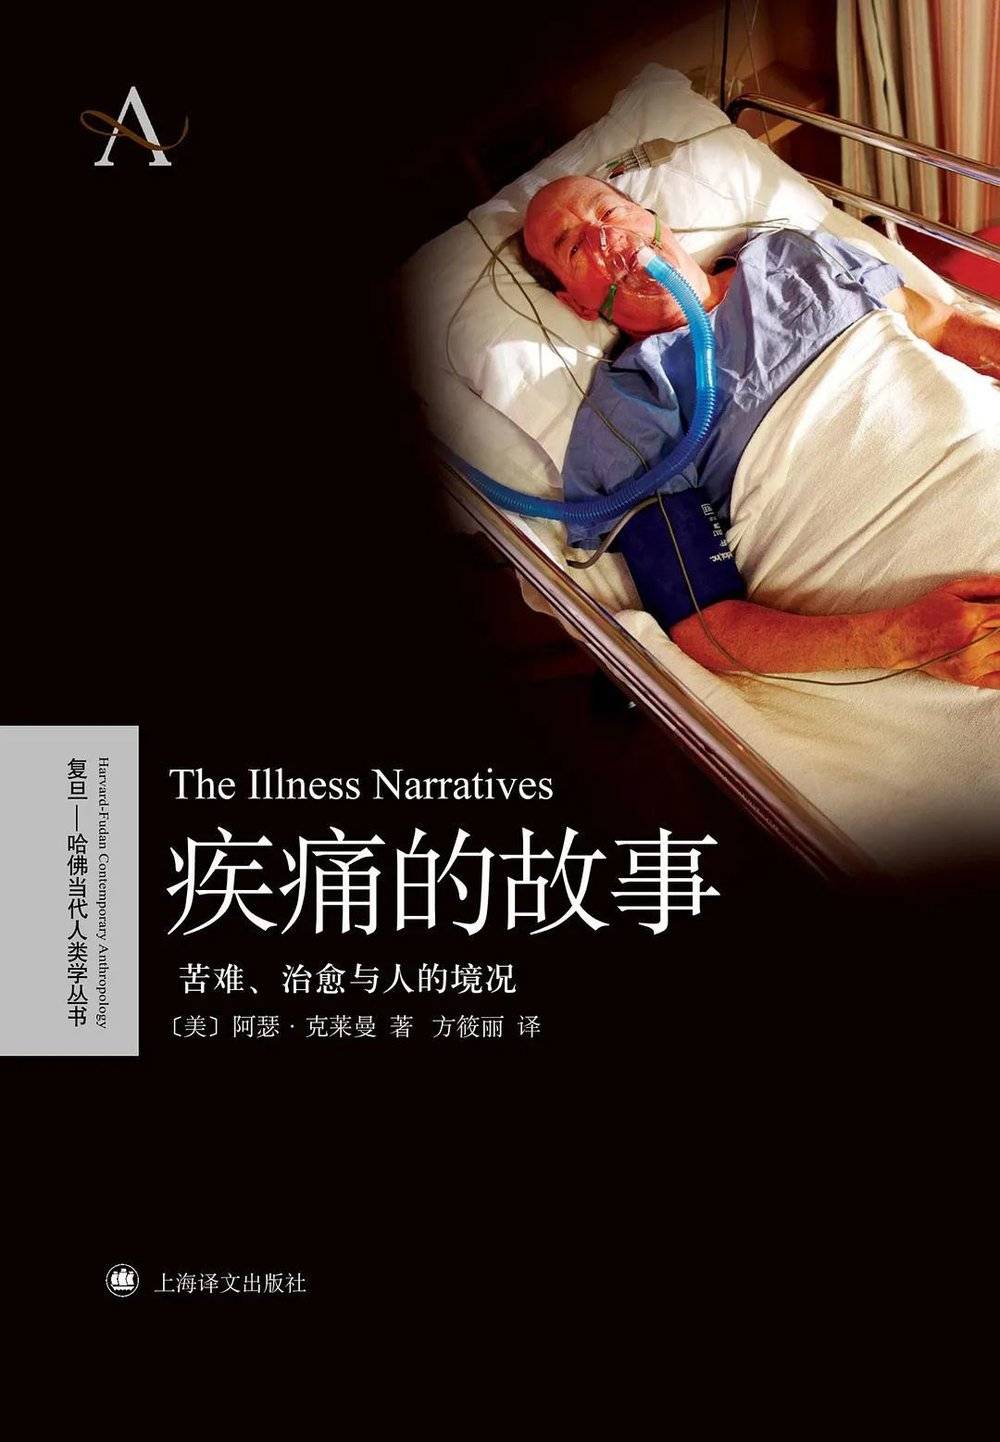 《疾痛的故事: 苦难、治愈与人的境况》，（美）阿瑟·克莱曼 /著，方筱丽/译，上海译文出版社，2010年4月